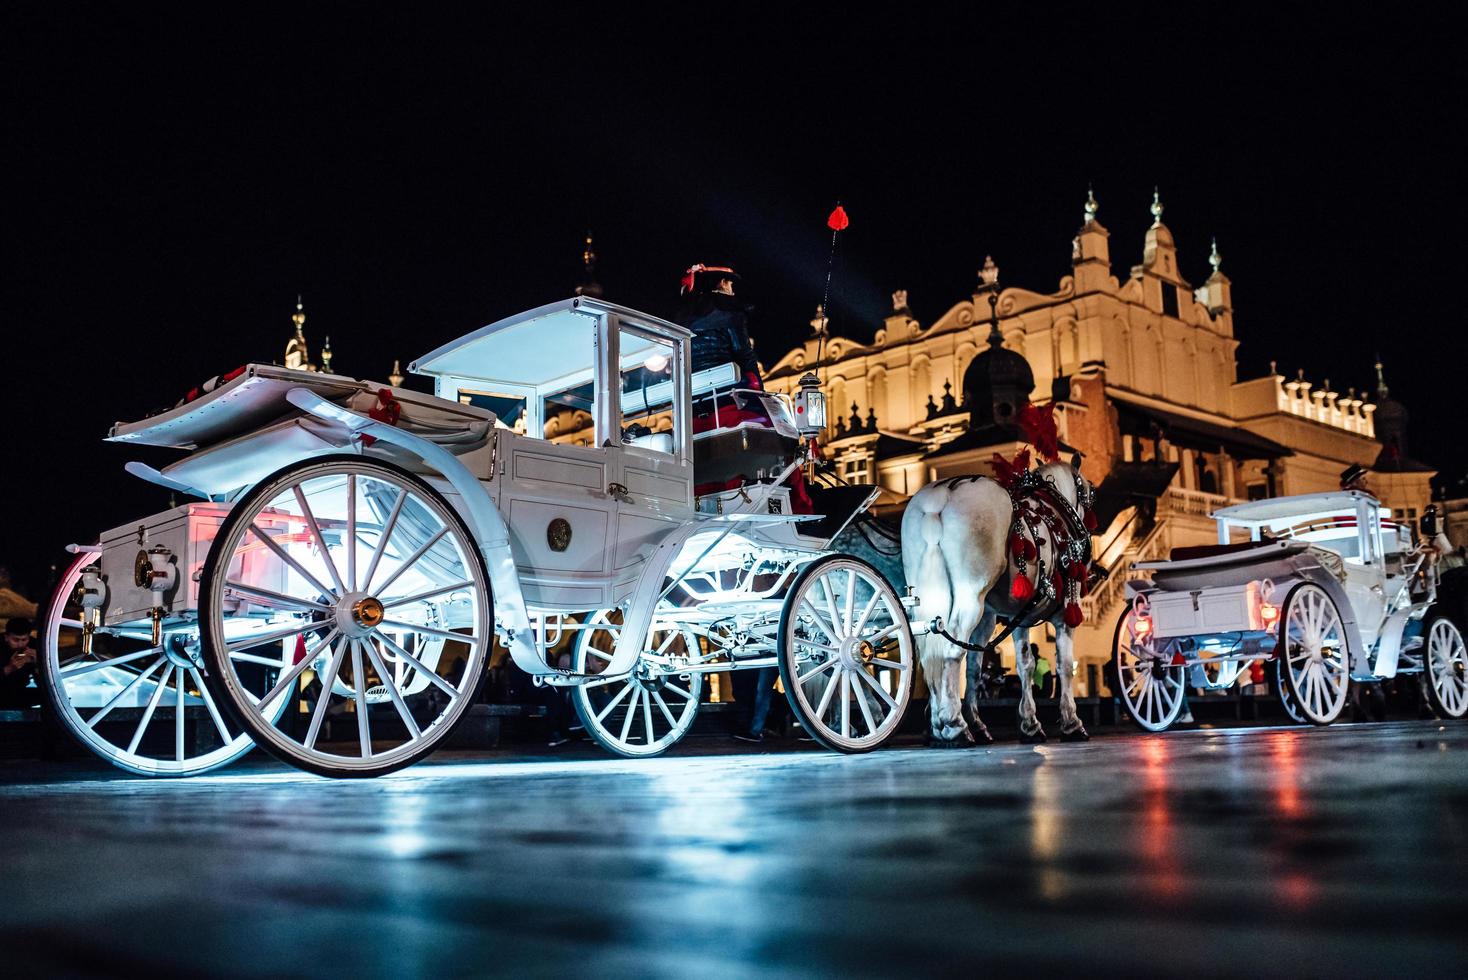 cracovia, polonia 2017 - la vecchia piazza della notte a cracovia con carrozze trainate da cavalli foto